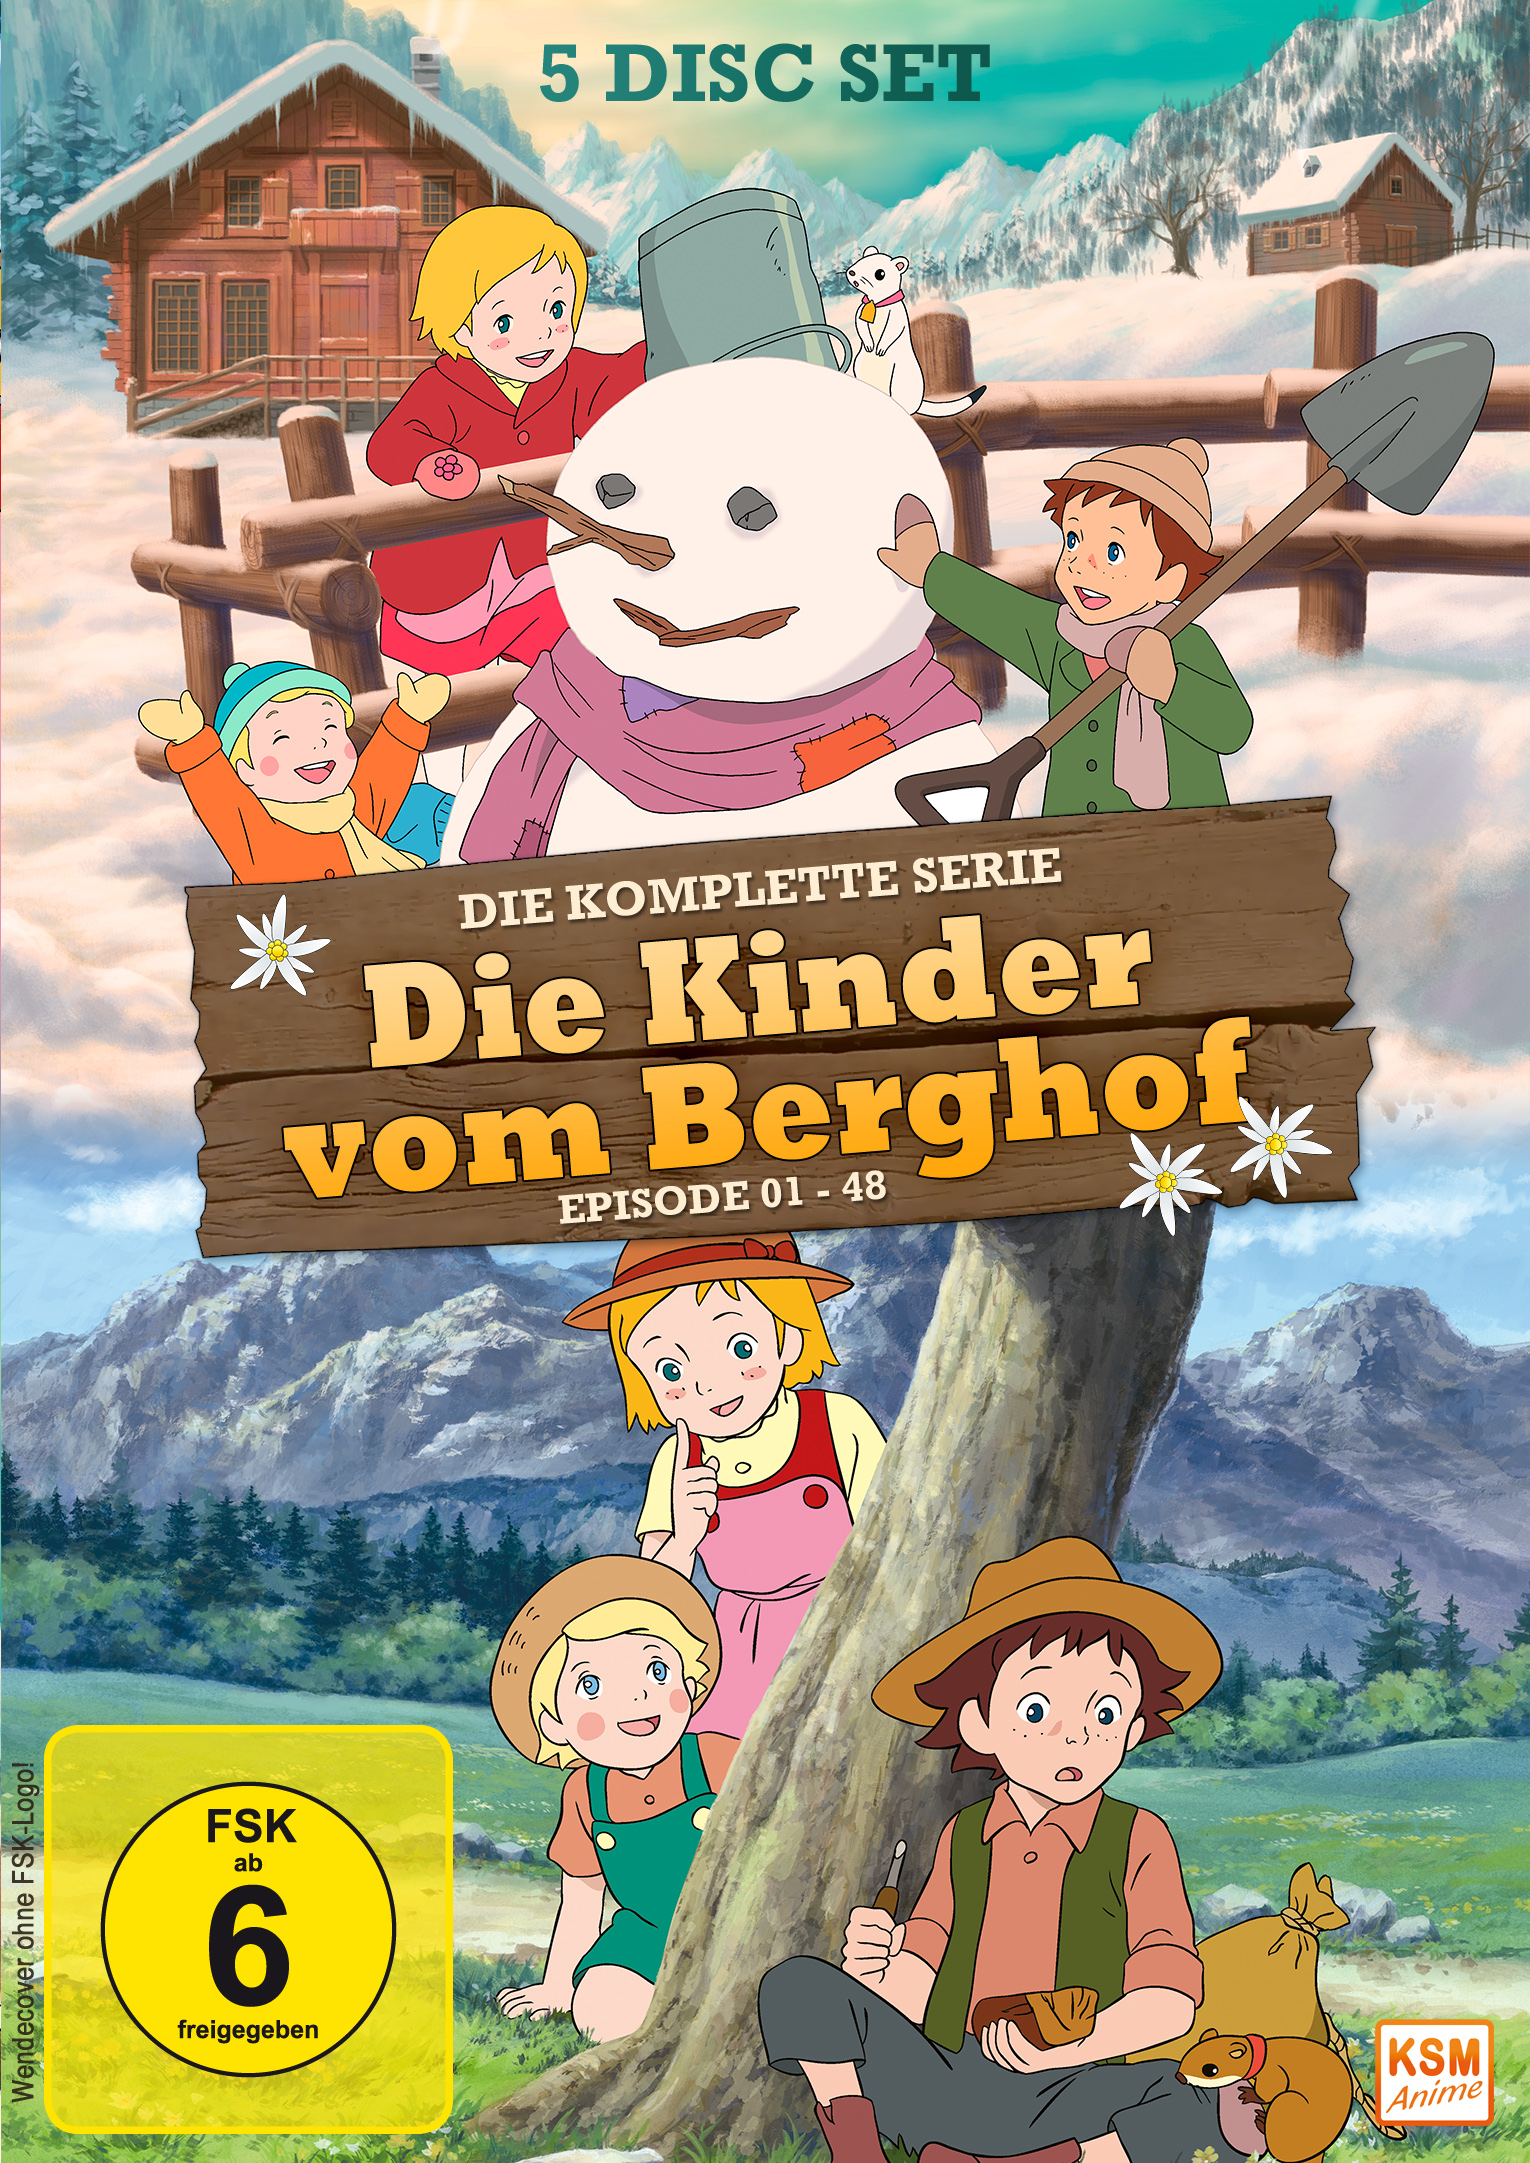 Die Kinder vom Berghof - Gesamtedition: Episode 01-48 [DVD] Cover